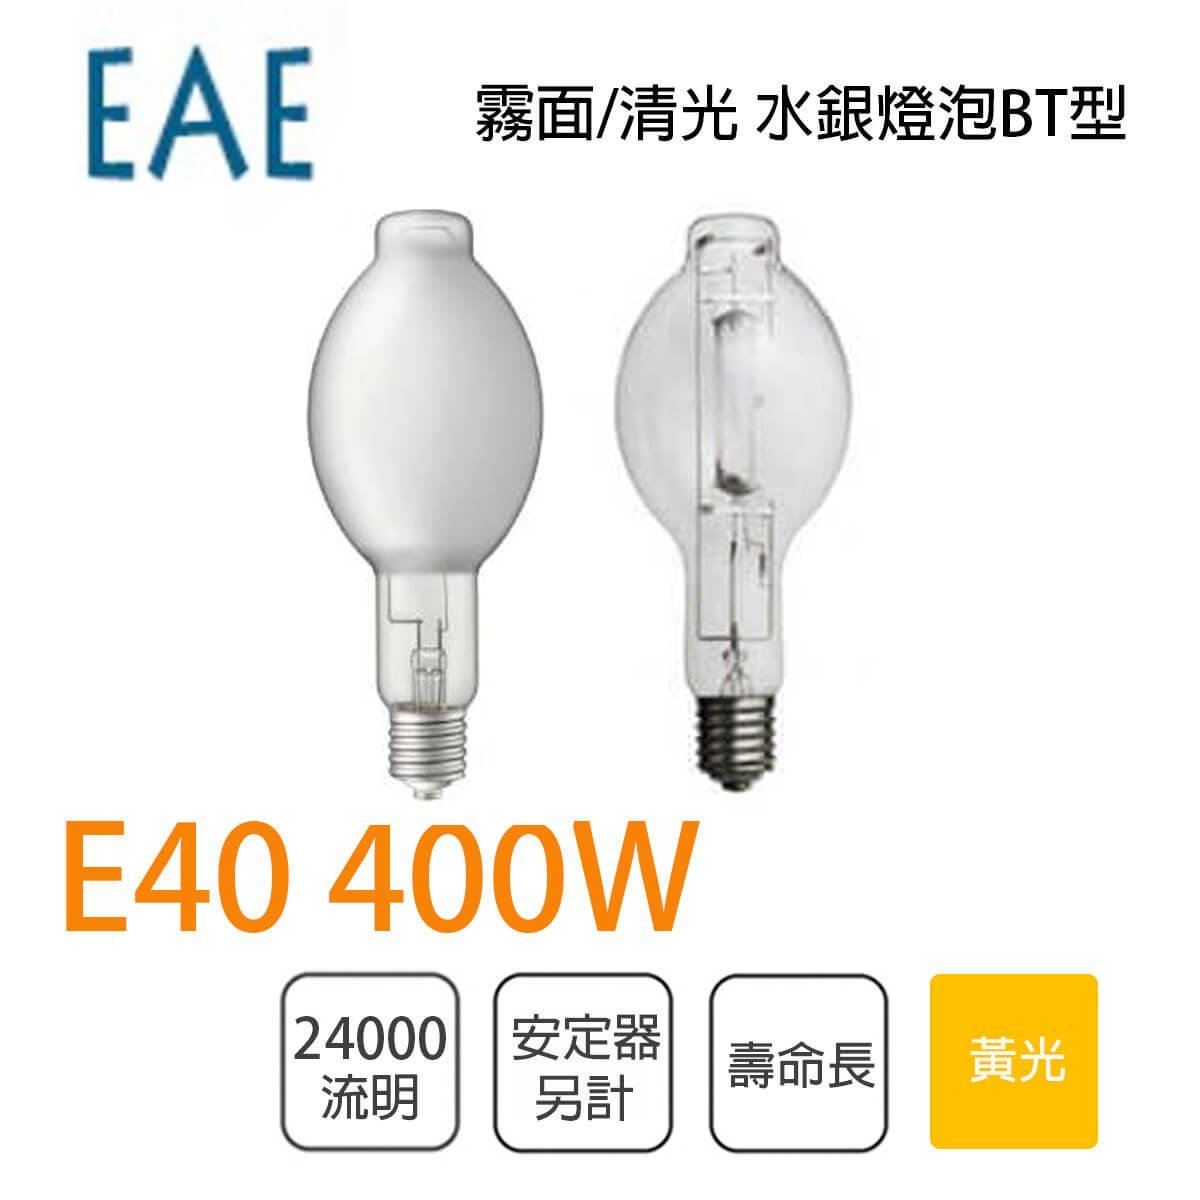 EAE 含稅水銀燈泡需安定器400W E40 清光/霧面光彩照明EAE-400W-GU2Q-C 